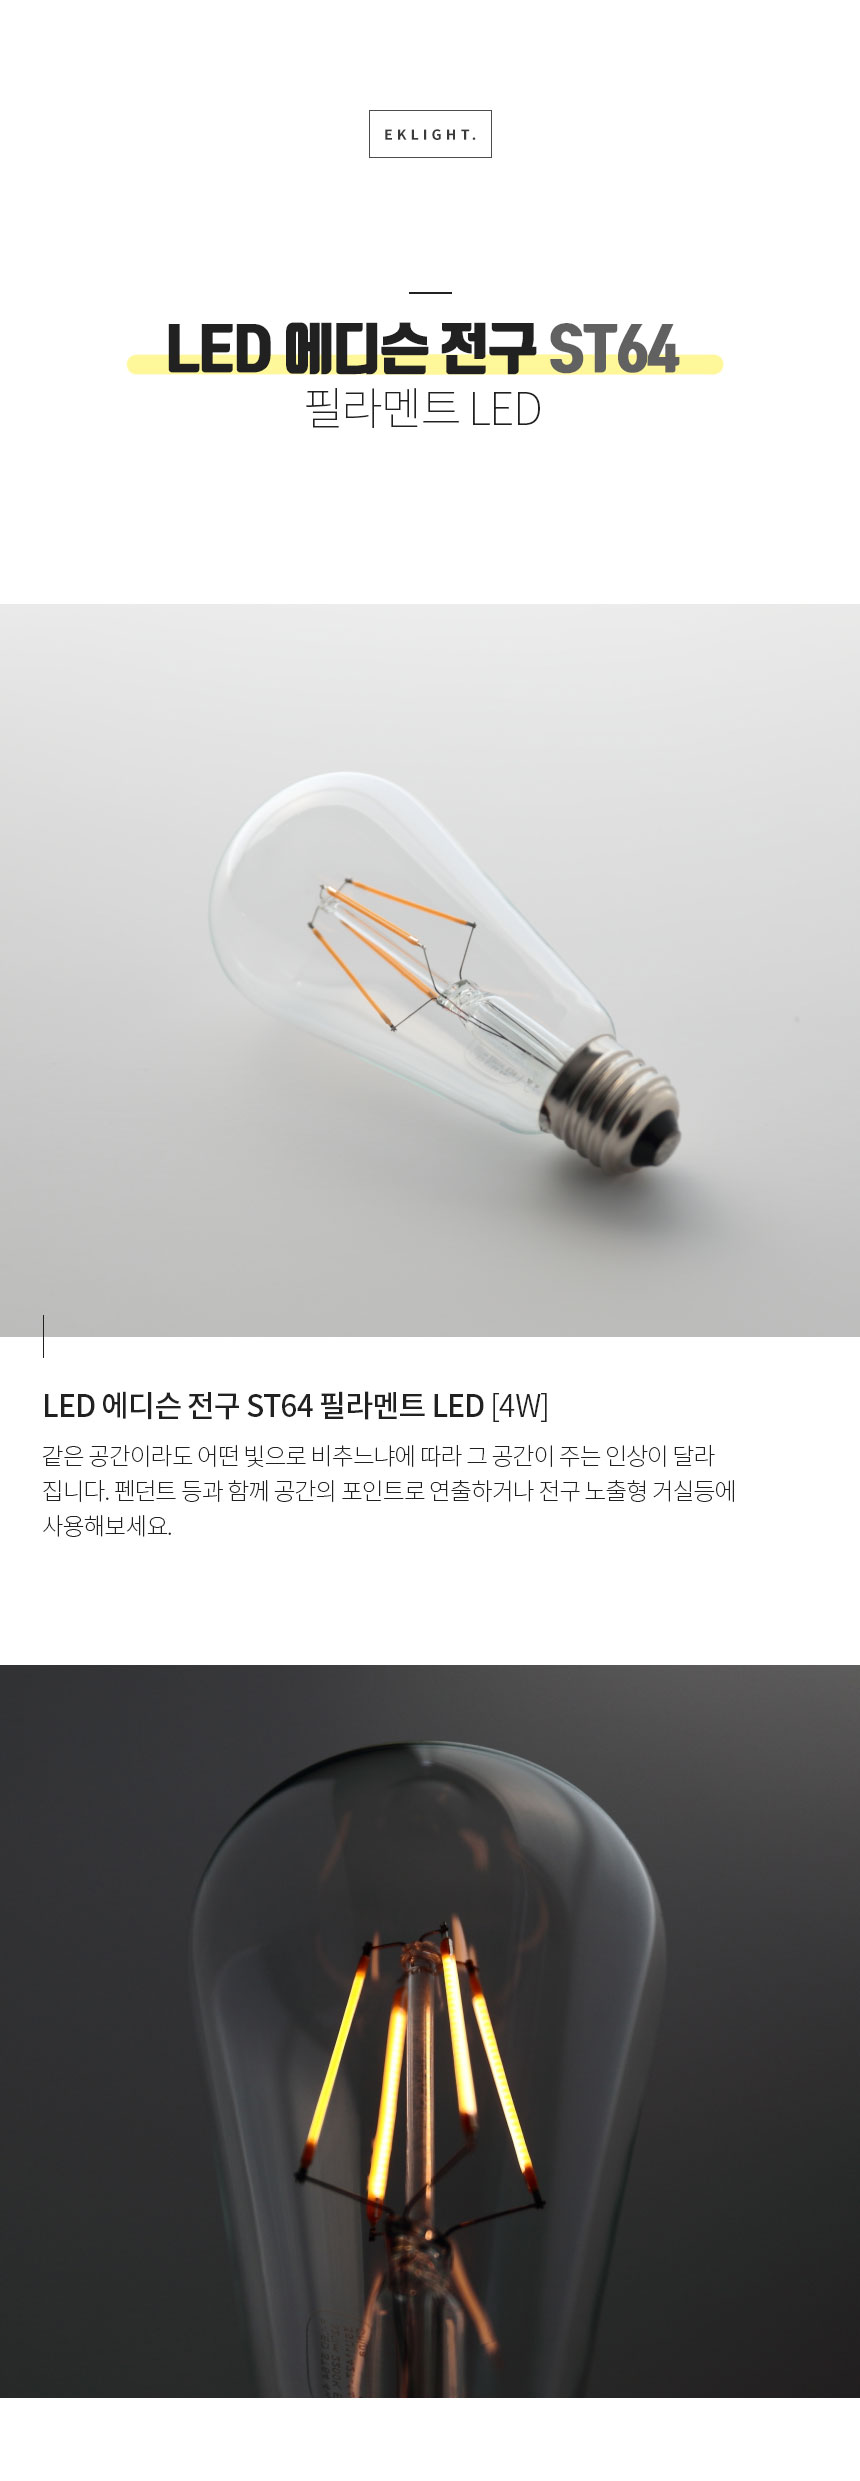 LED 에디슨 전구 ST64
 필라멘트 LED LED 에디슨 전구 ST64 필라멘트 LED [4W] 같은 공간이라도 어떤 빛으로 비추느냐에 따라 그 공간이 주는 인상이 달라
집니다. 펜던트 등과 함께 공간의 포인트로 연출하거나 전구 노출형 거실등에
사용해보세요.